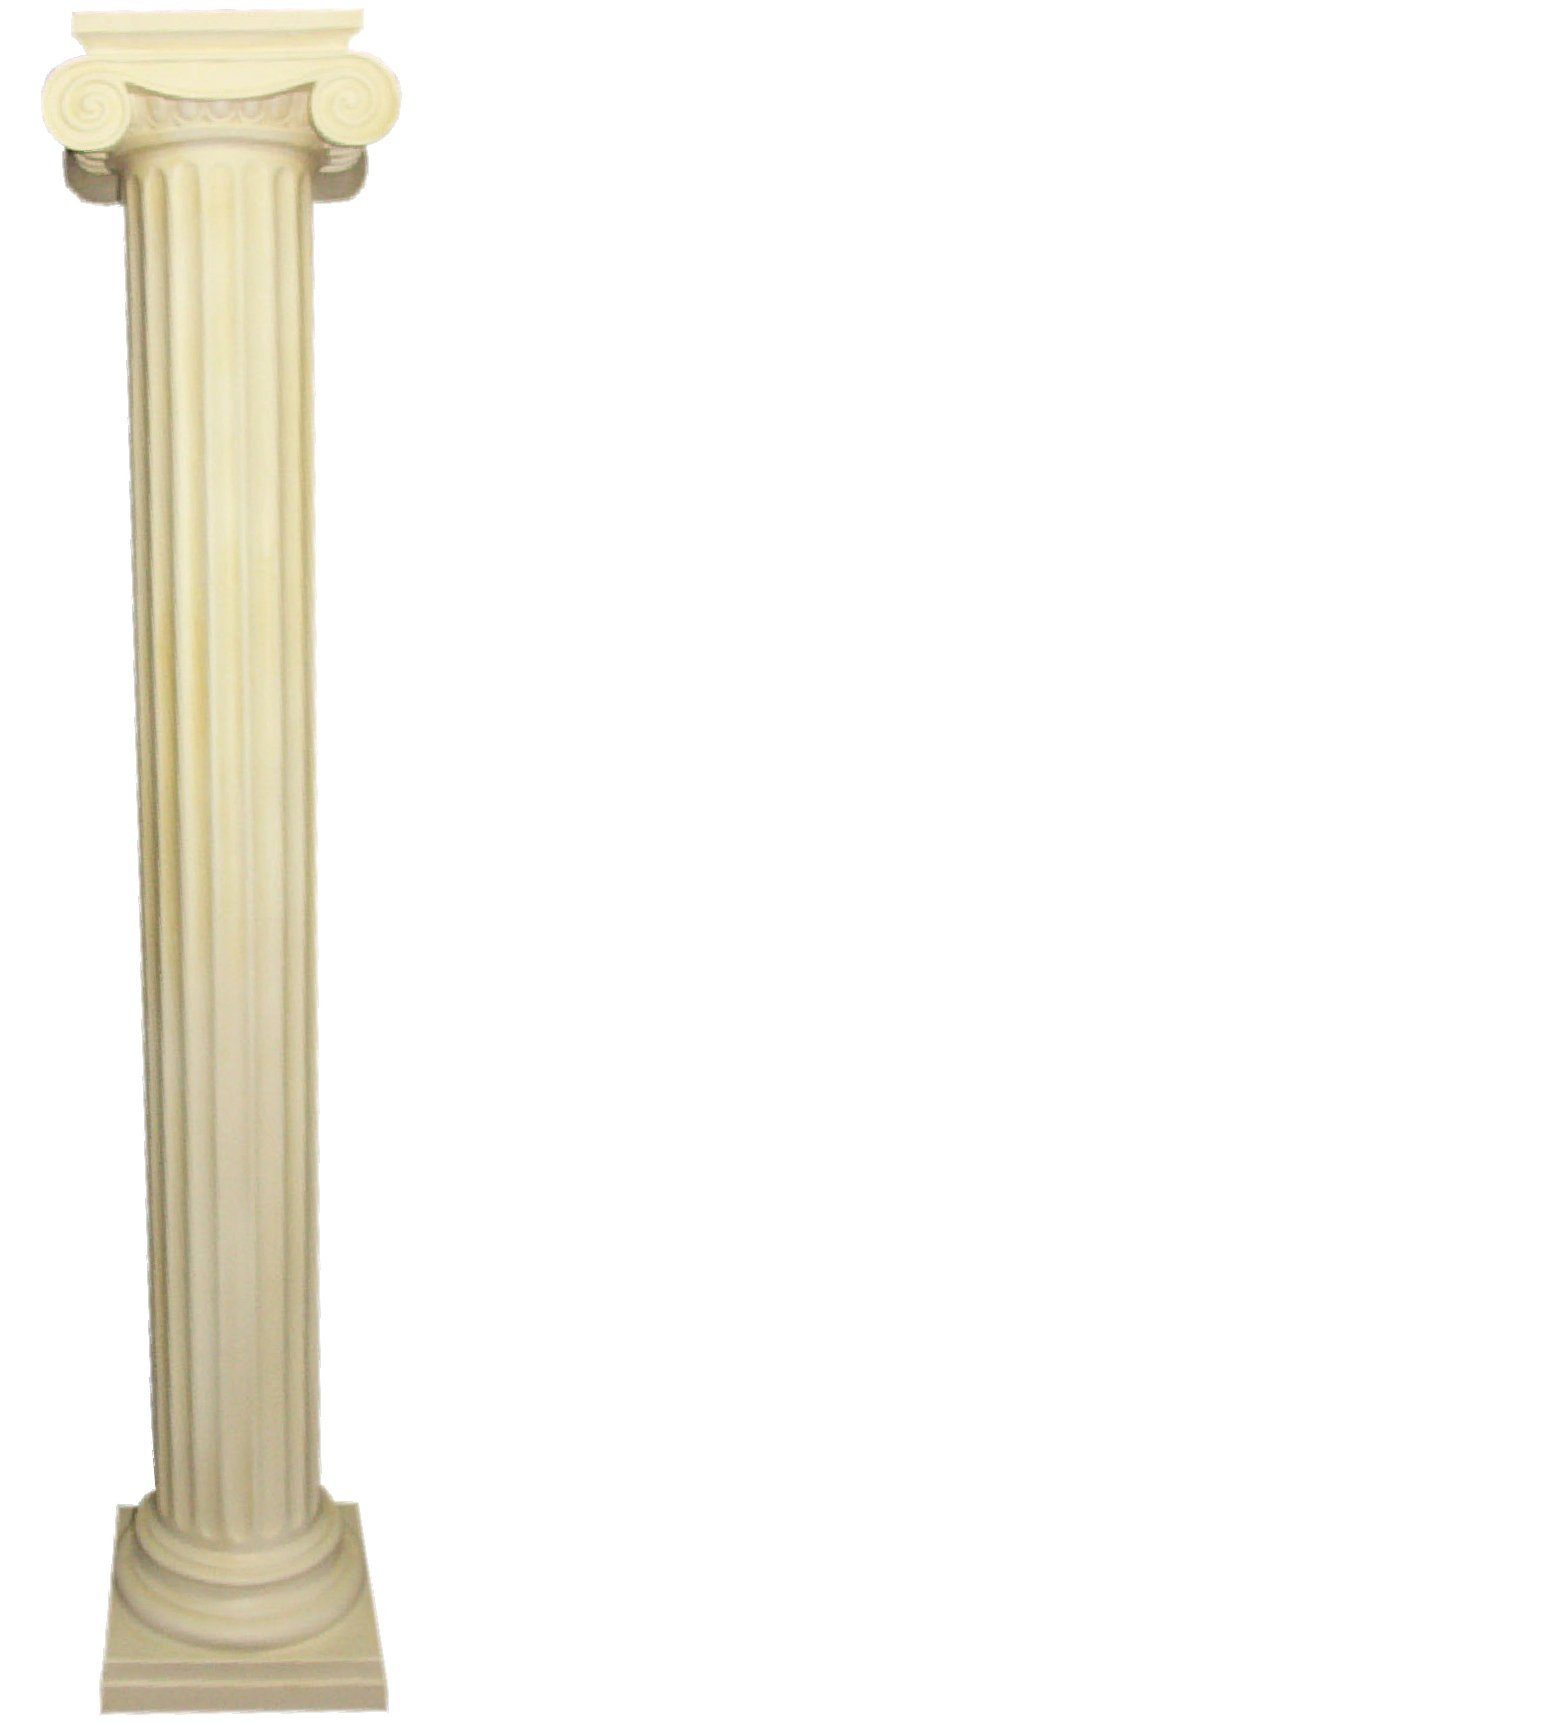 JVmoebel Skulptur XXL Griechische Säule Antik Stil Design Säulen Luxus Neu 218cm Groß